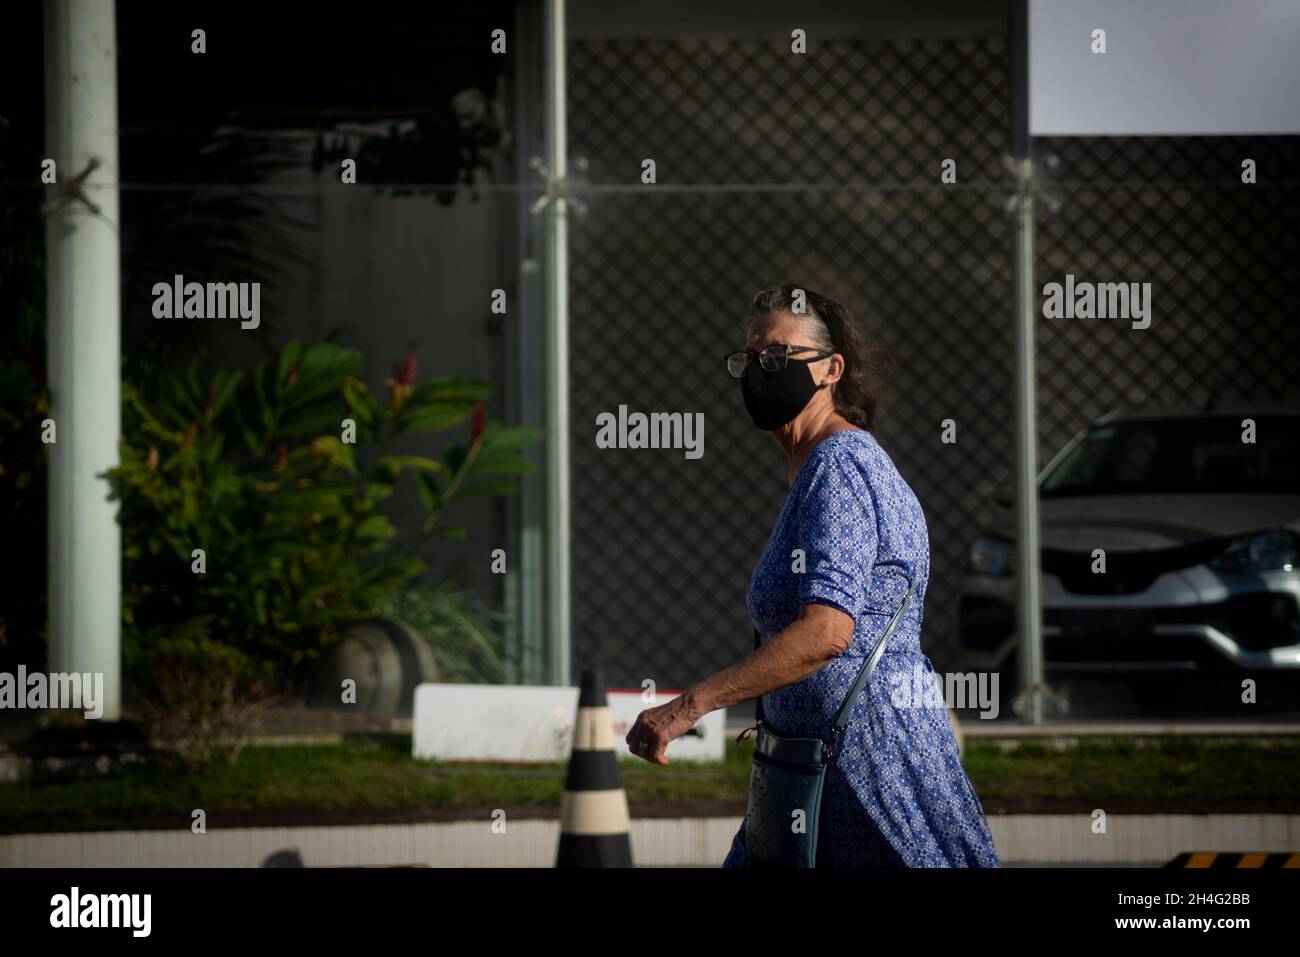 Salvador, Bahia, Brasile - 21 maggio: 2021: Donna che indossa la maschera e cammina per le strade di Salvador, Bahia, Brasile. Foto Stock